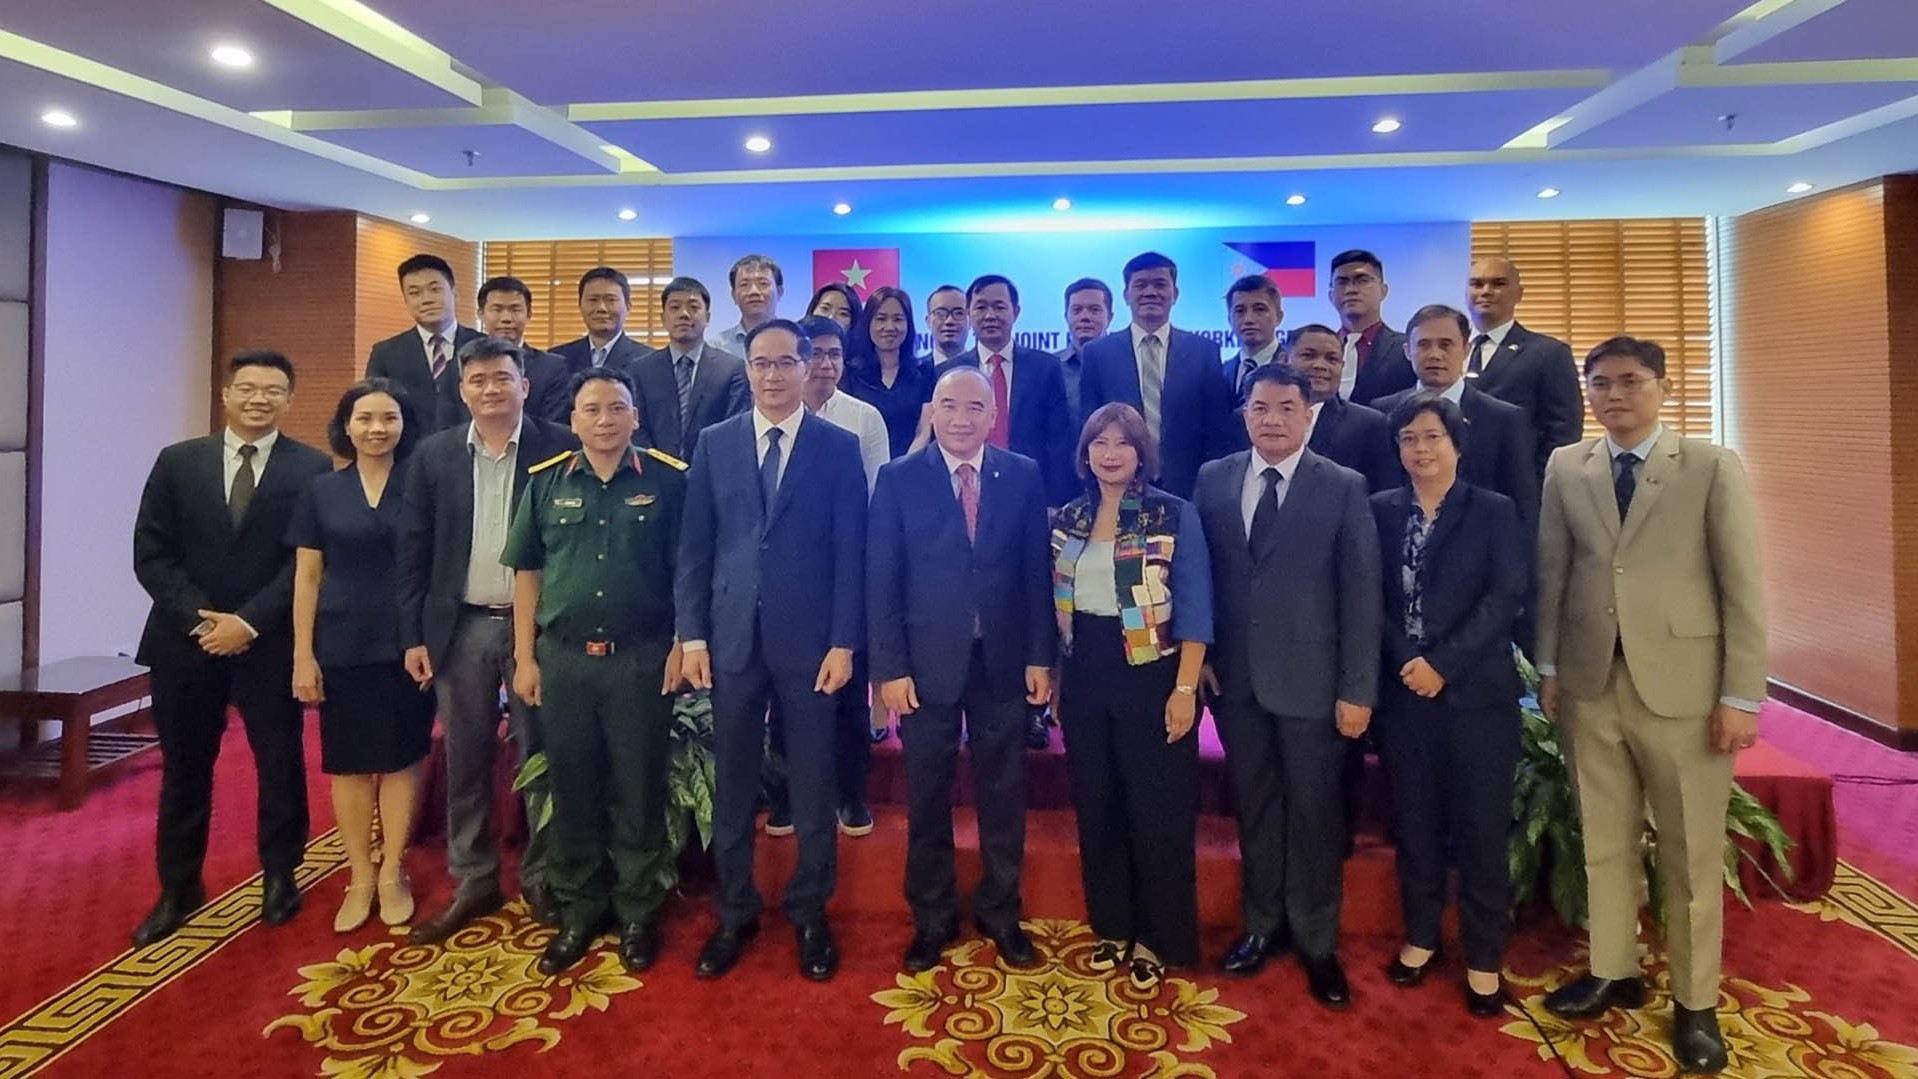 Cuộc họp Nhóm công tác chung giữa Việt Nam và Philippines về các vấn biển và đại dương lần thứ 10